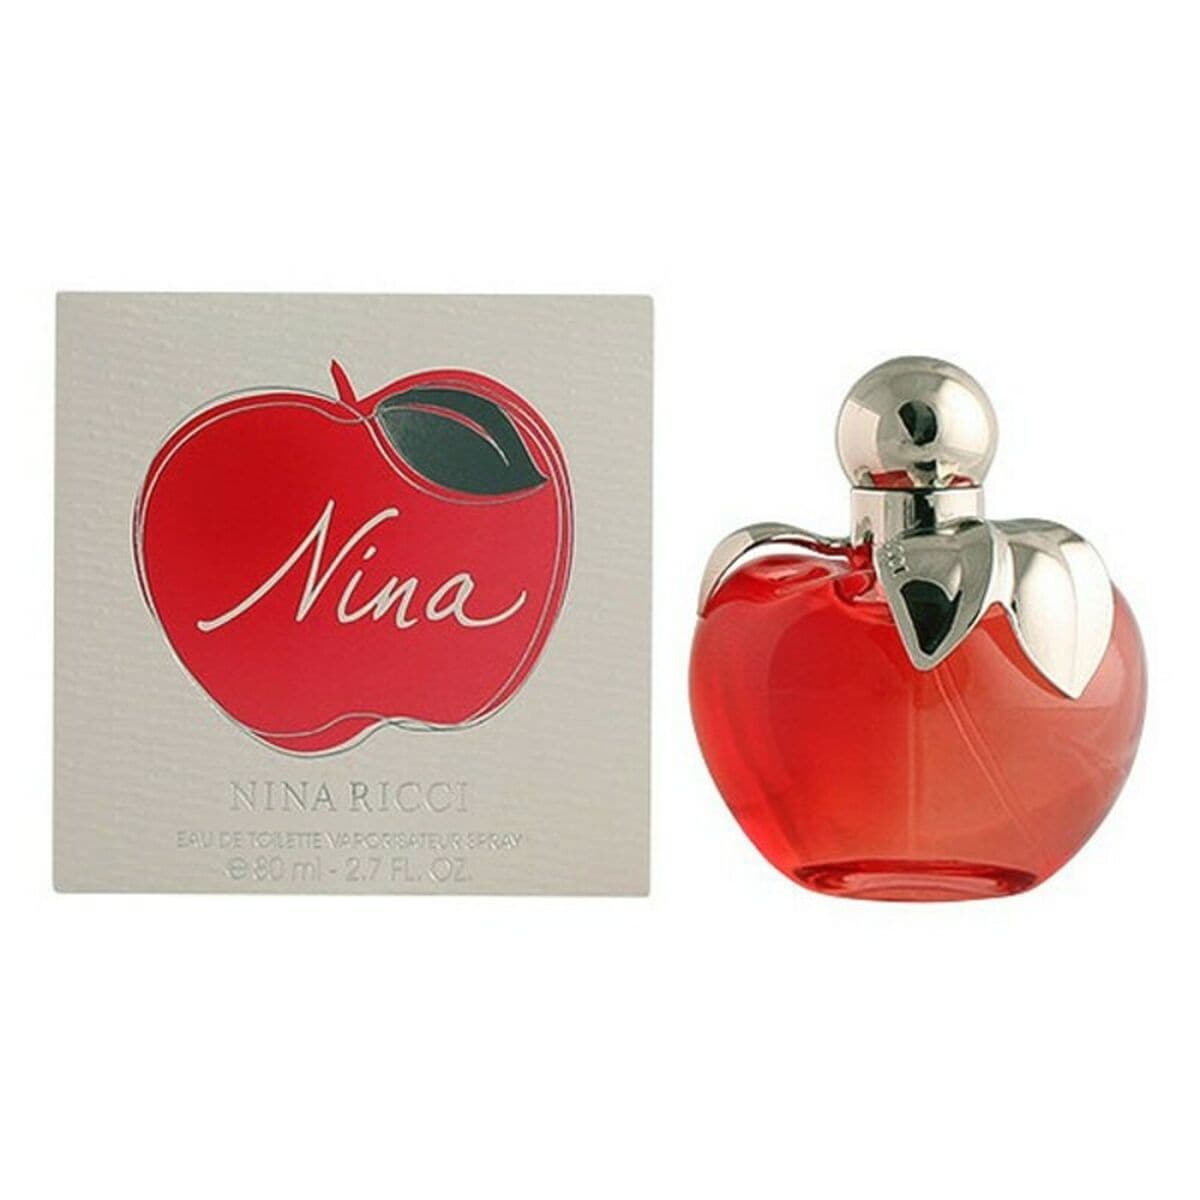 Women's Perfume Nina Nina Ricci EDT-0